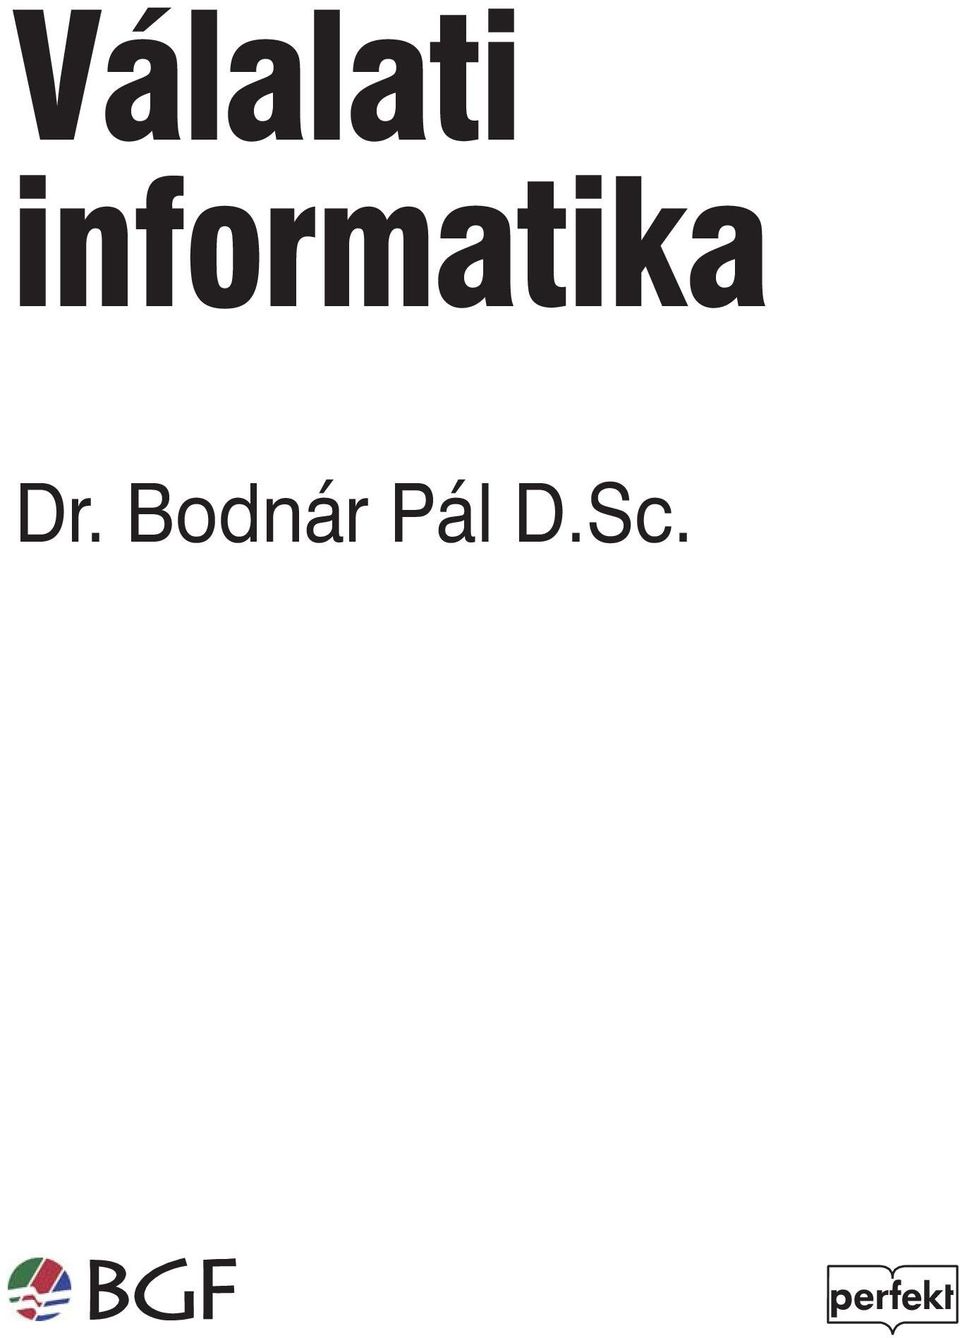 Dr. Bodnár